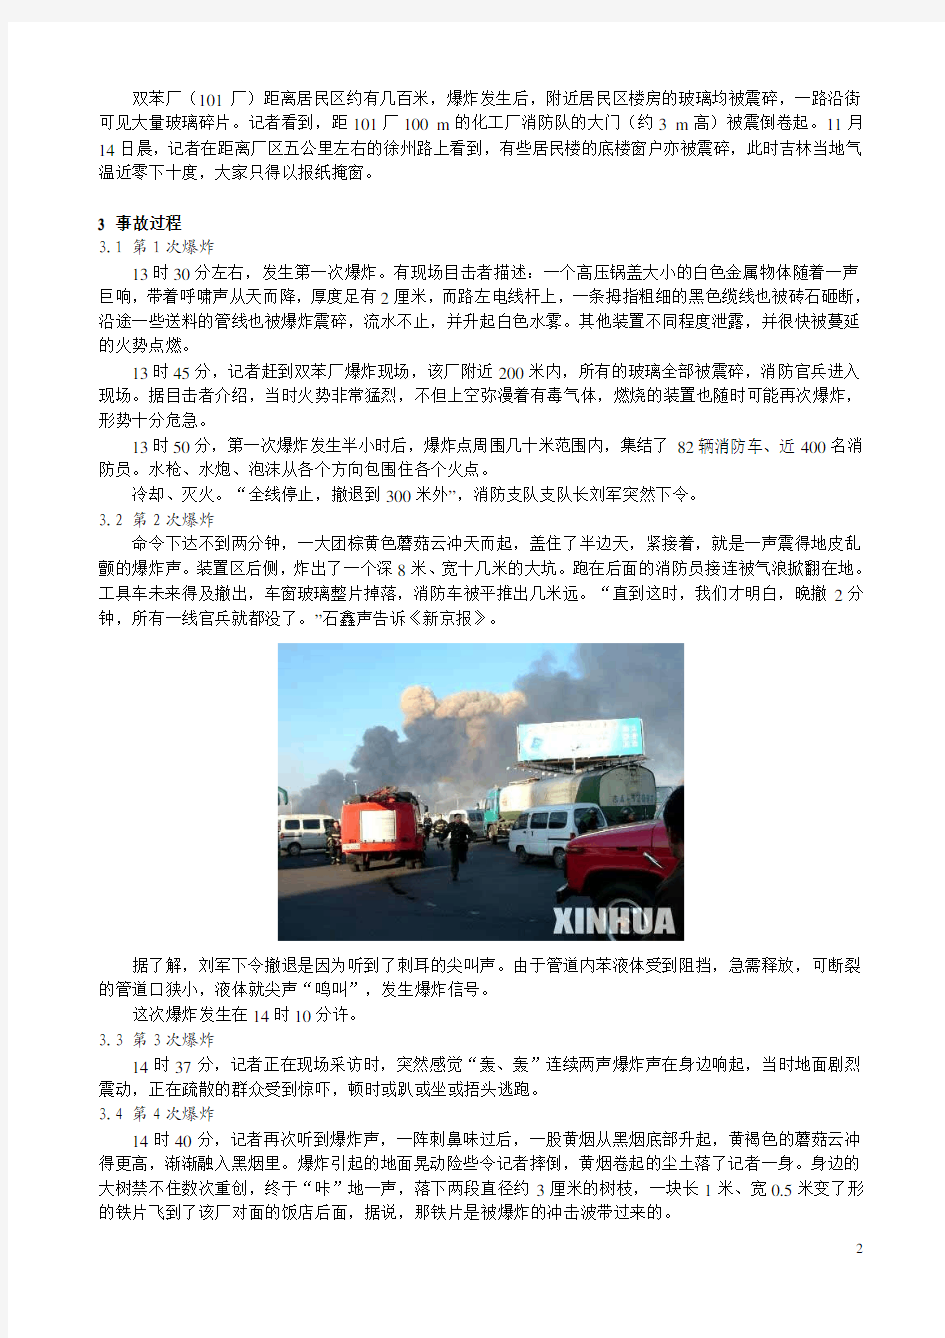 1-中国石油吉化股份有限公司双苯厂1113爆炸火灾